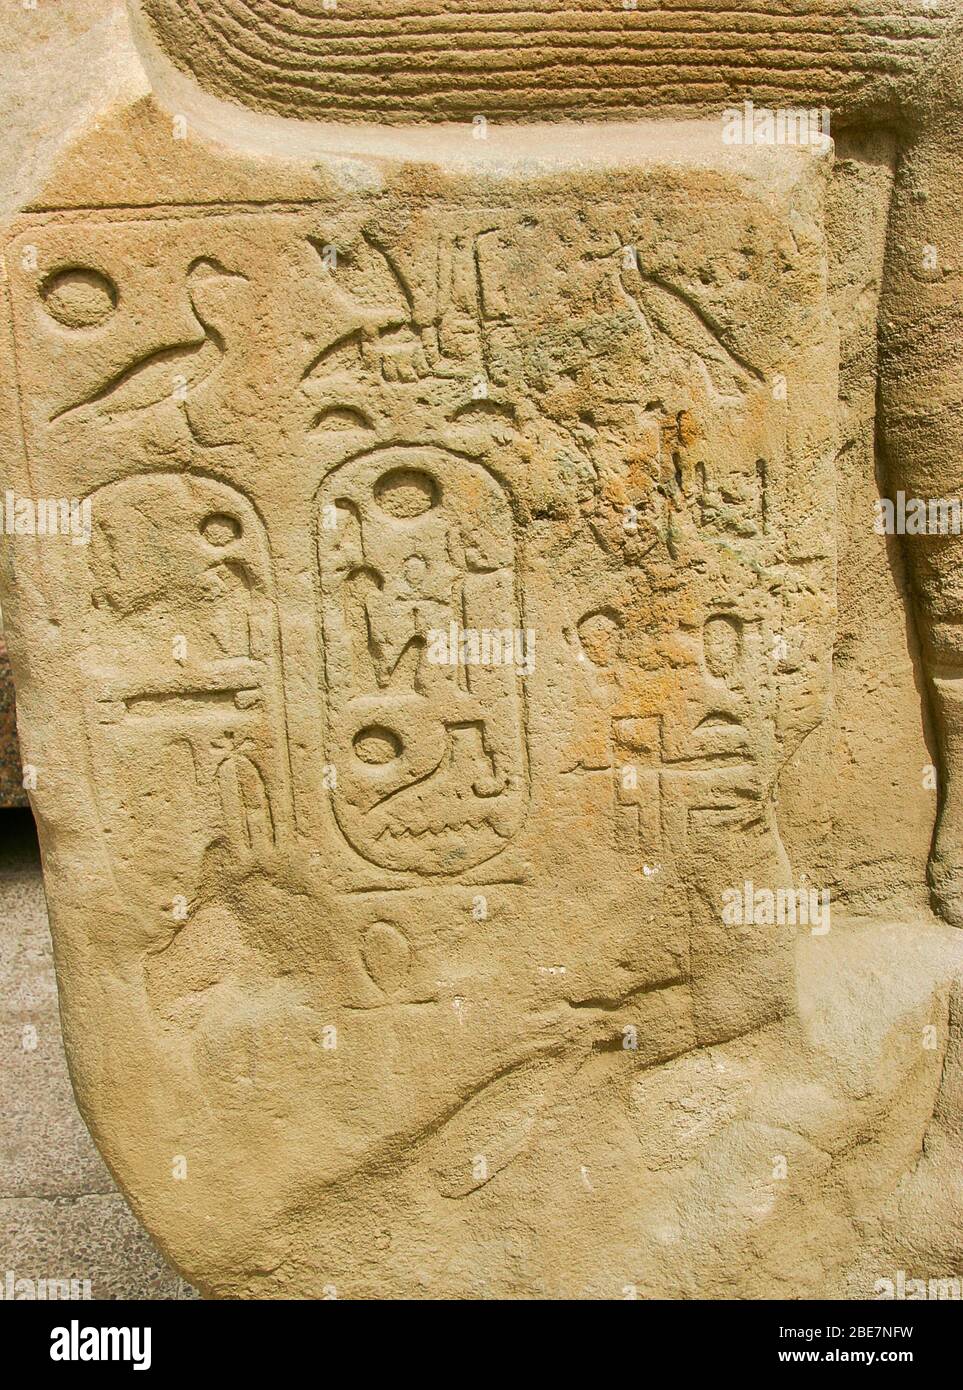 Égypte, le Caire, Heliopolis, musée en plein air, parc obélisque. Statue avec une inscription rare sur 'Nehebkaou qui vit dans le grand temple'. Banque D'Images